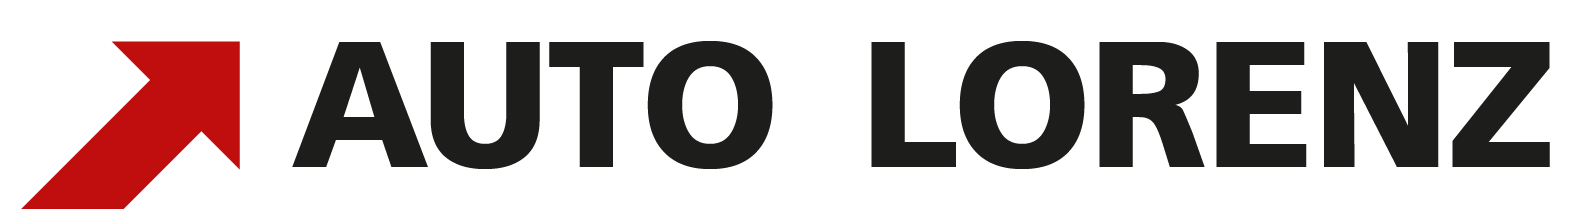 auto lorenz logo